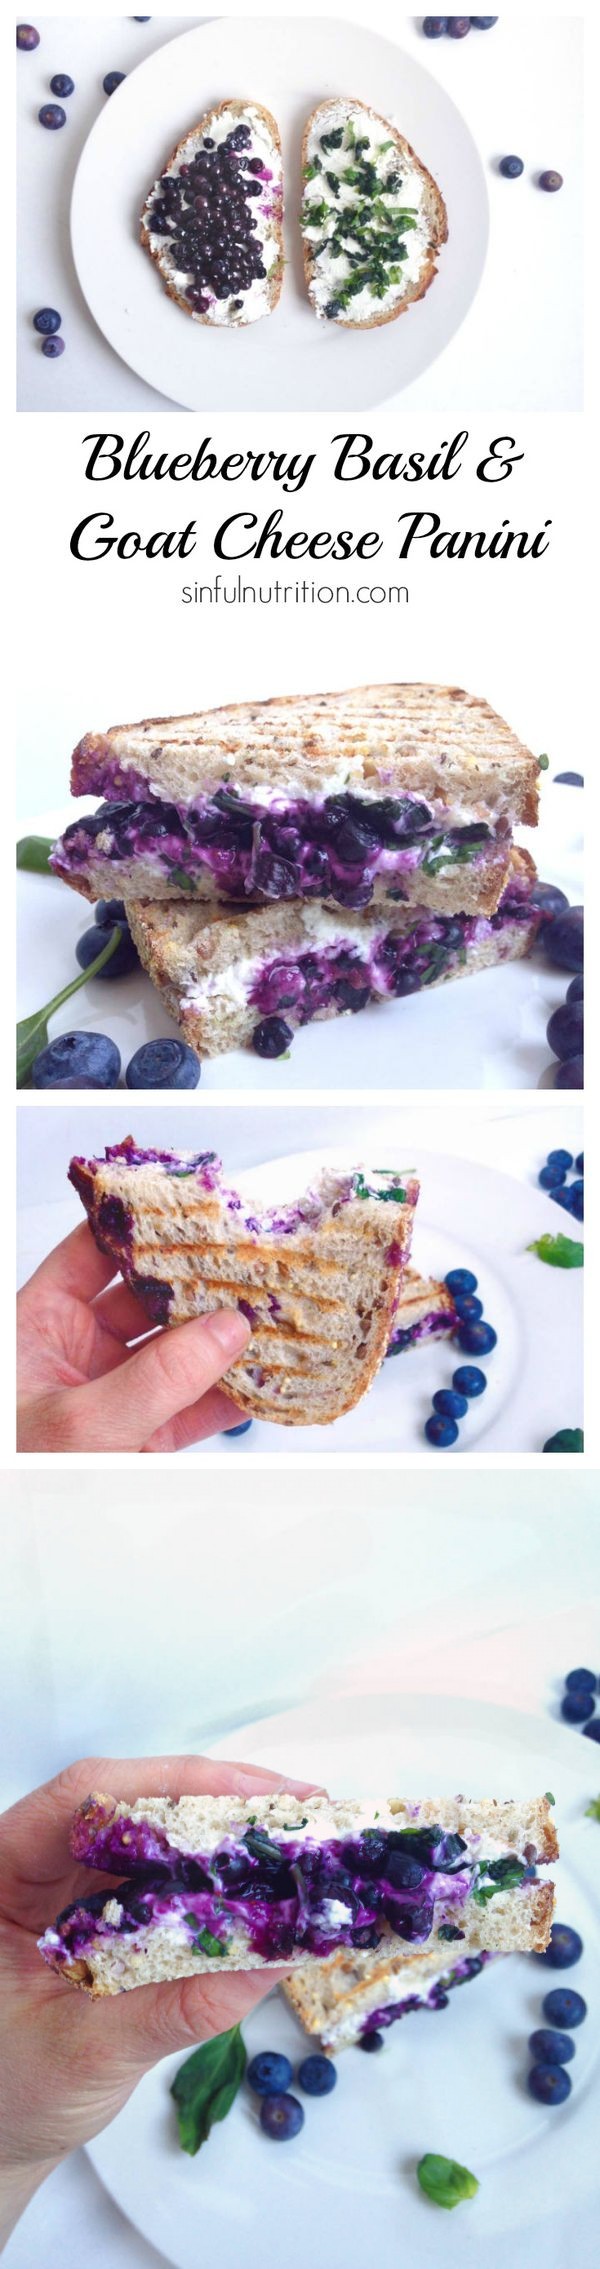 Blueberry Basil & Goat Cheese Panini Sandwich